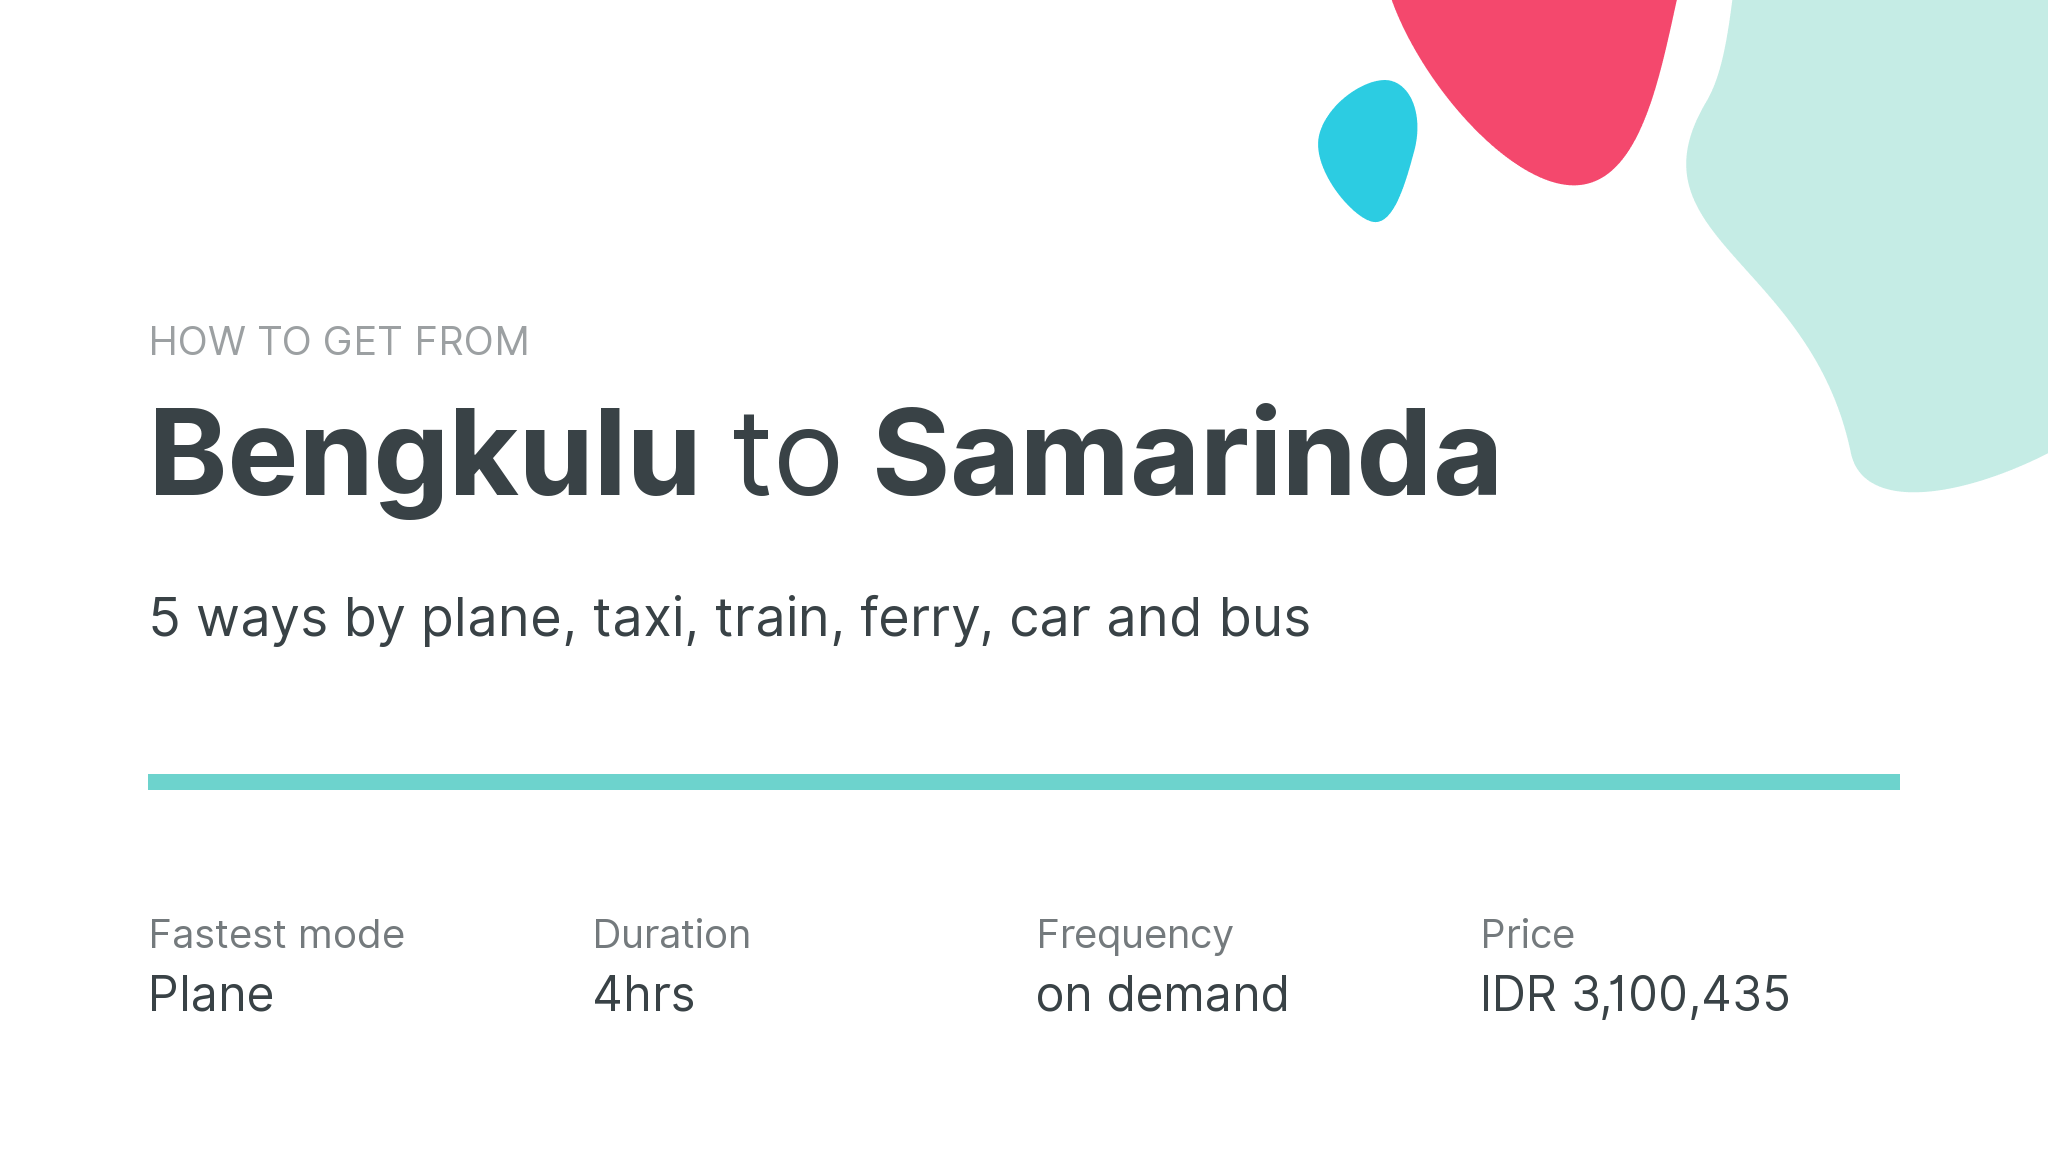 How do I get from Bengkulu to Samarinda